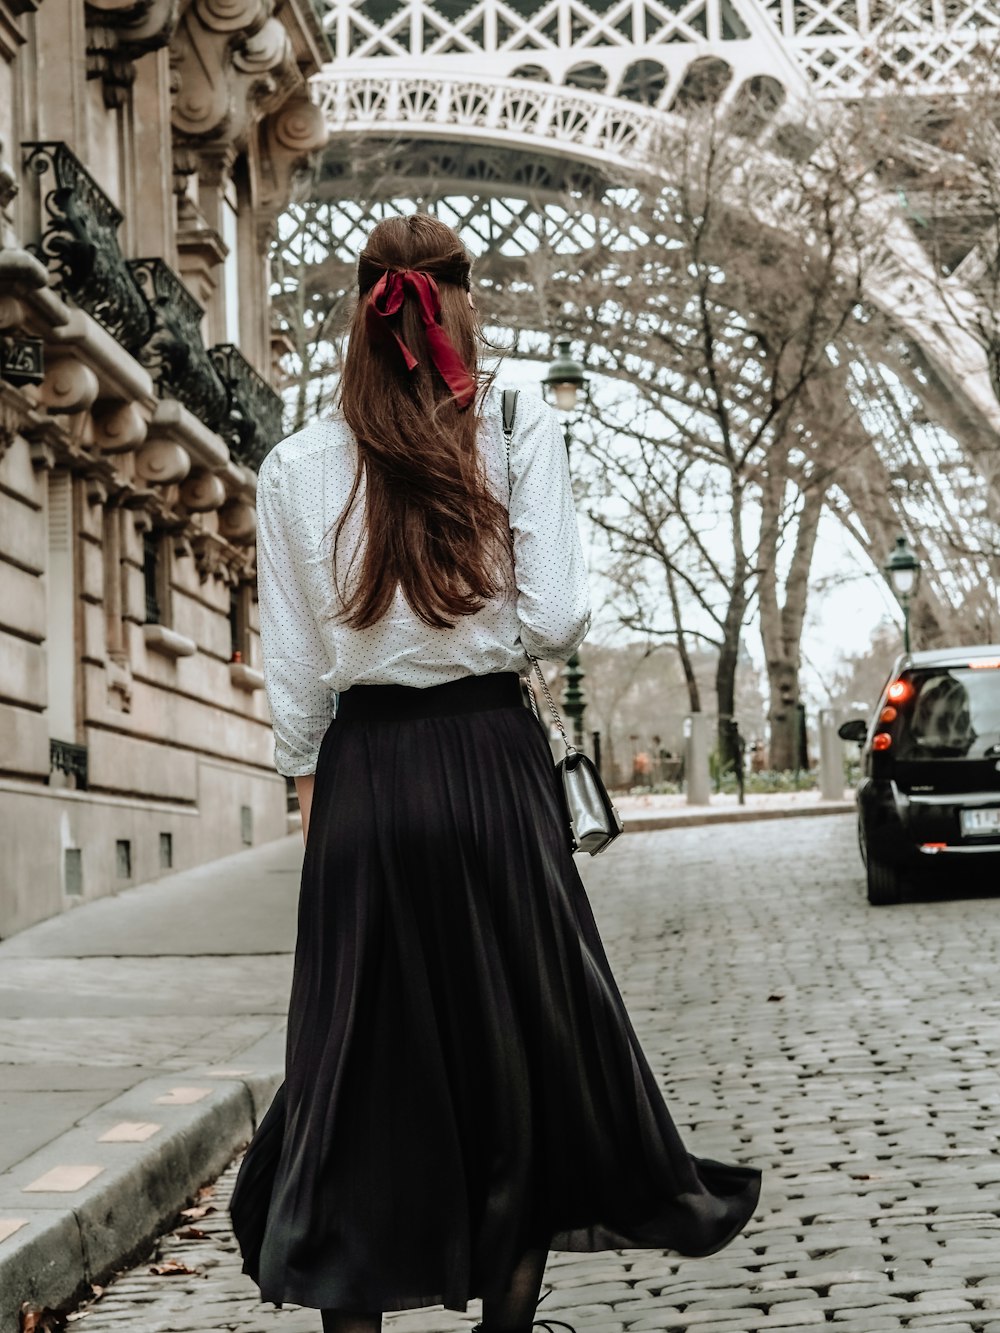 Femme en robe à manches longues blanche et noire debout sur le trottoir pendant la journée